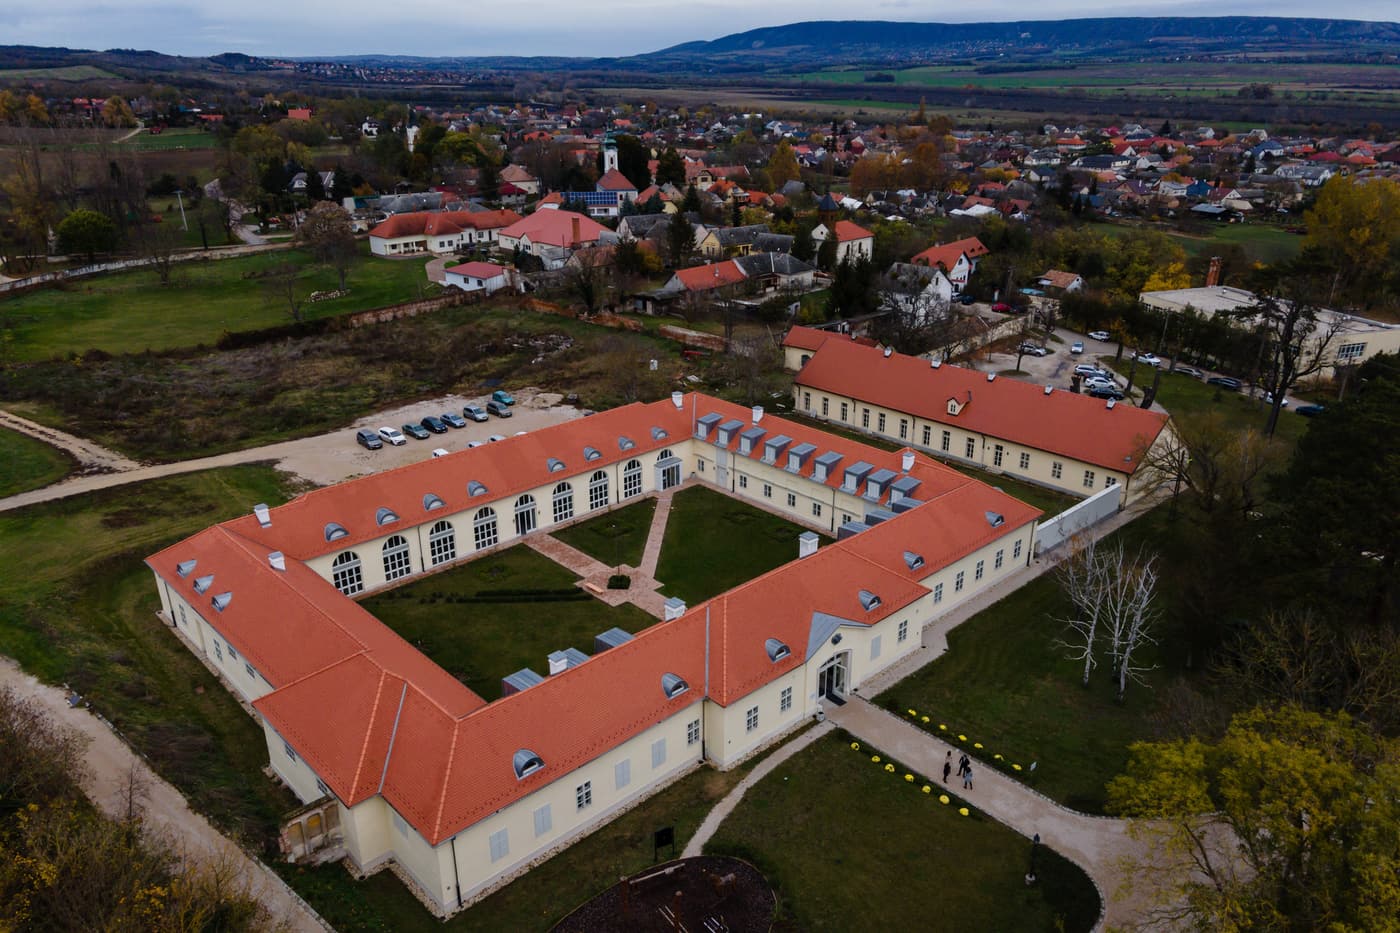 Megújult és új funkcióval bővült a fehérvárcsurgói Károlyi-kastély lovardaépülete